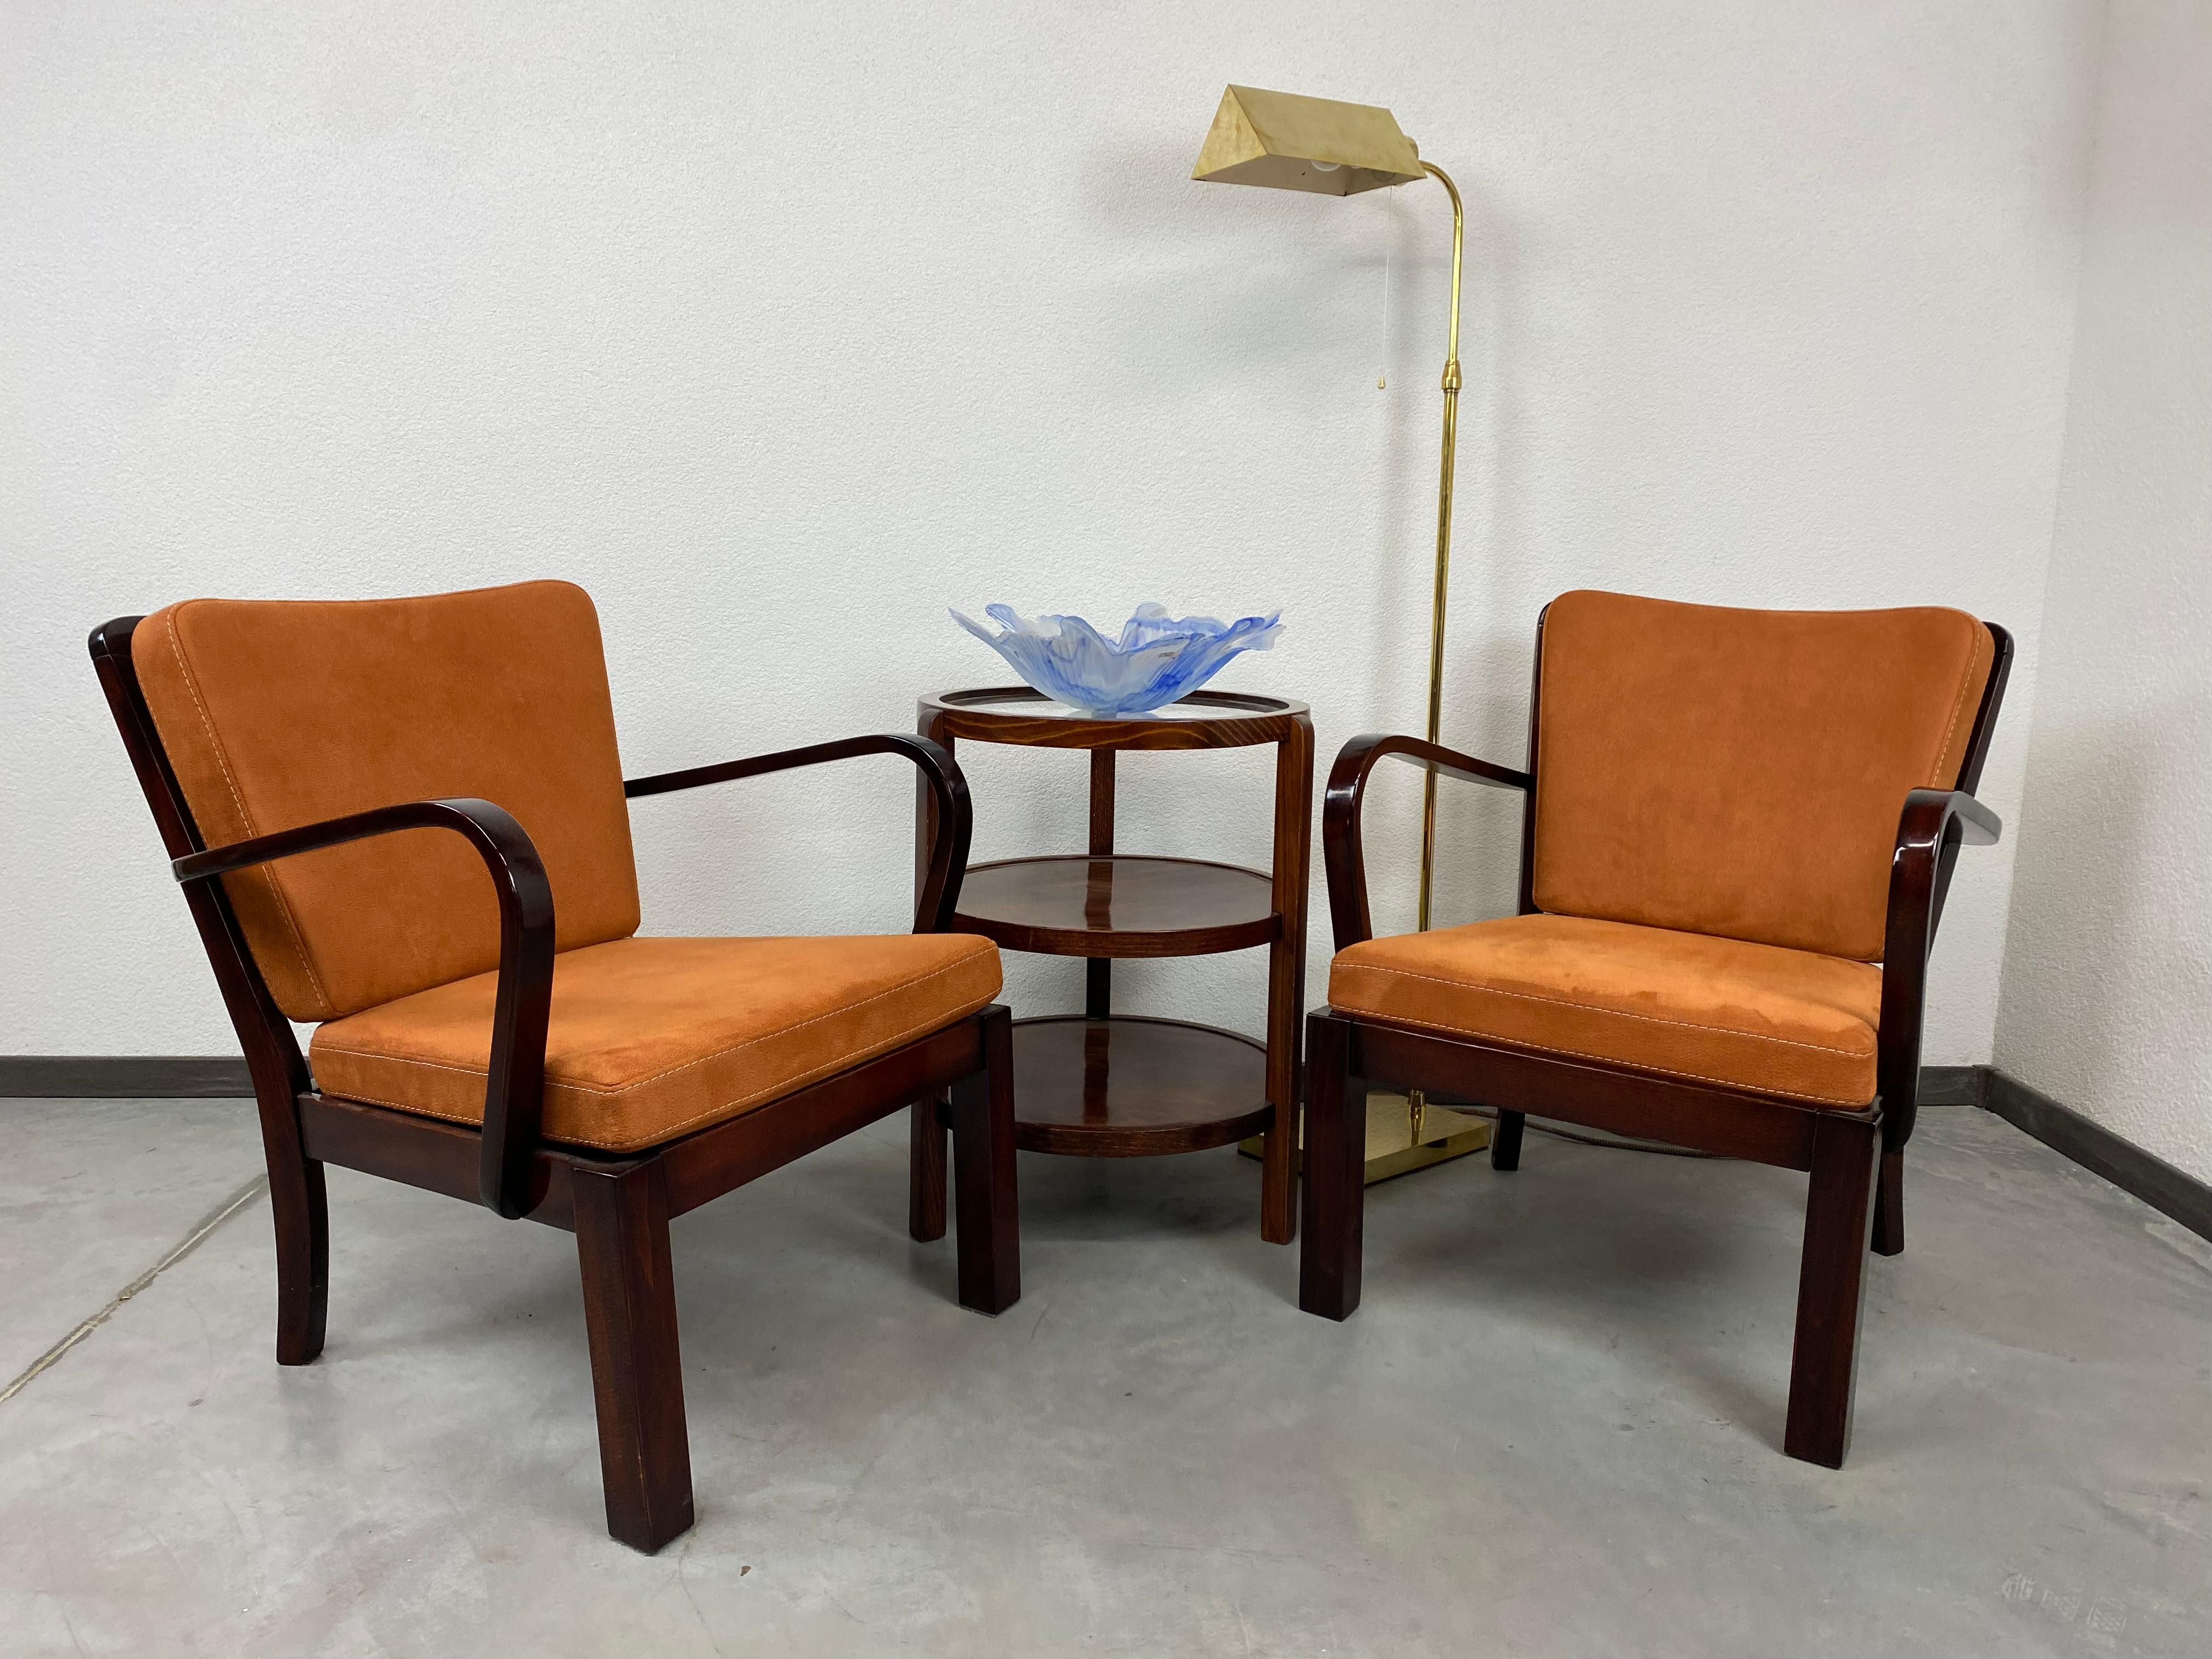 Paire de fauteuils Thonet-Mundus professionnellement teintés et repolis avec un nouveau tissu en terre cuite. 